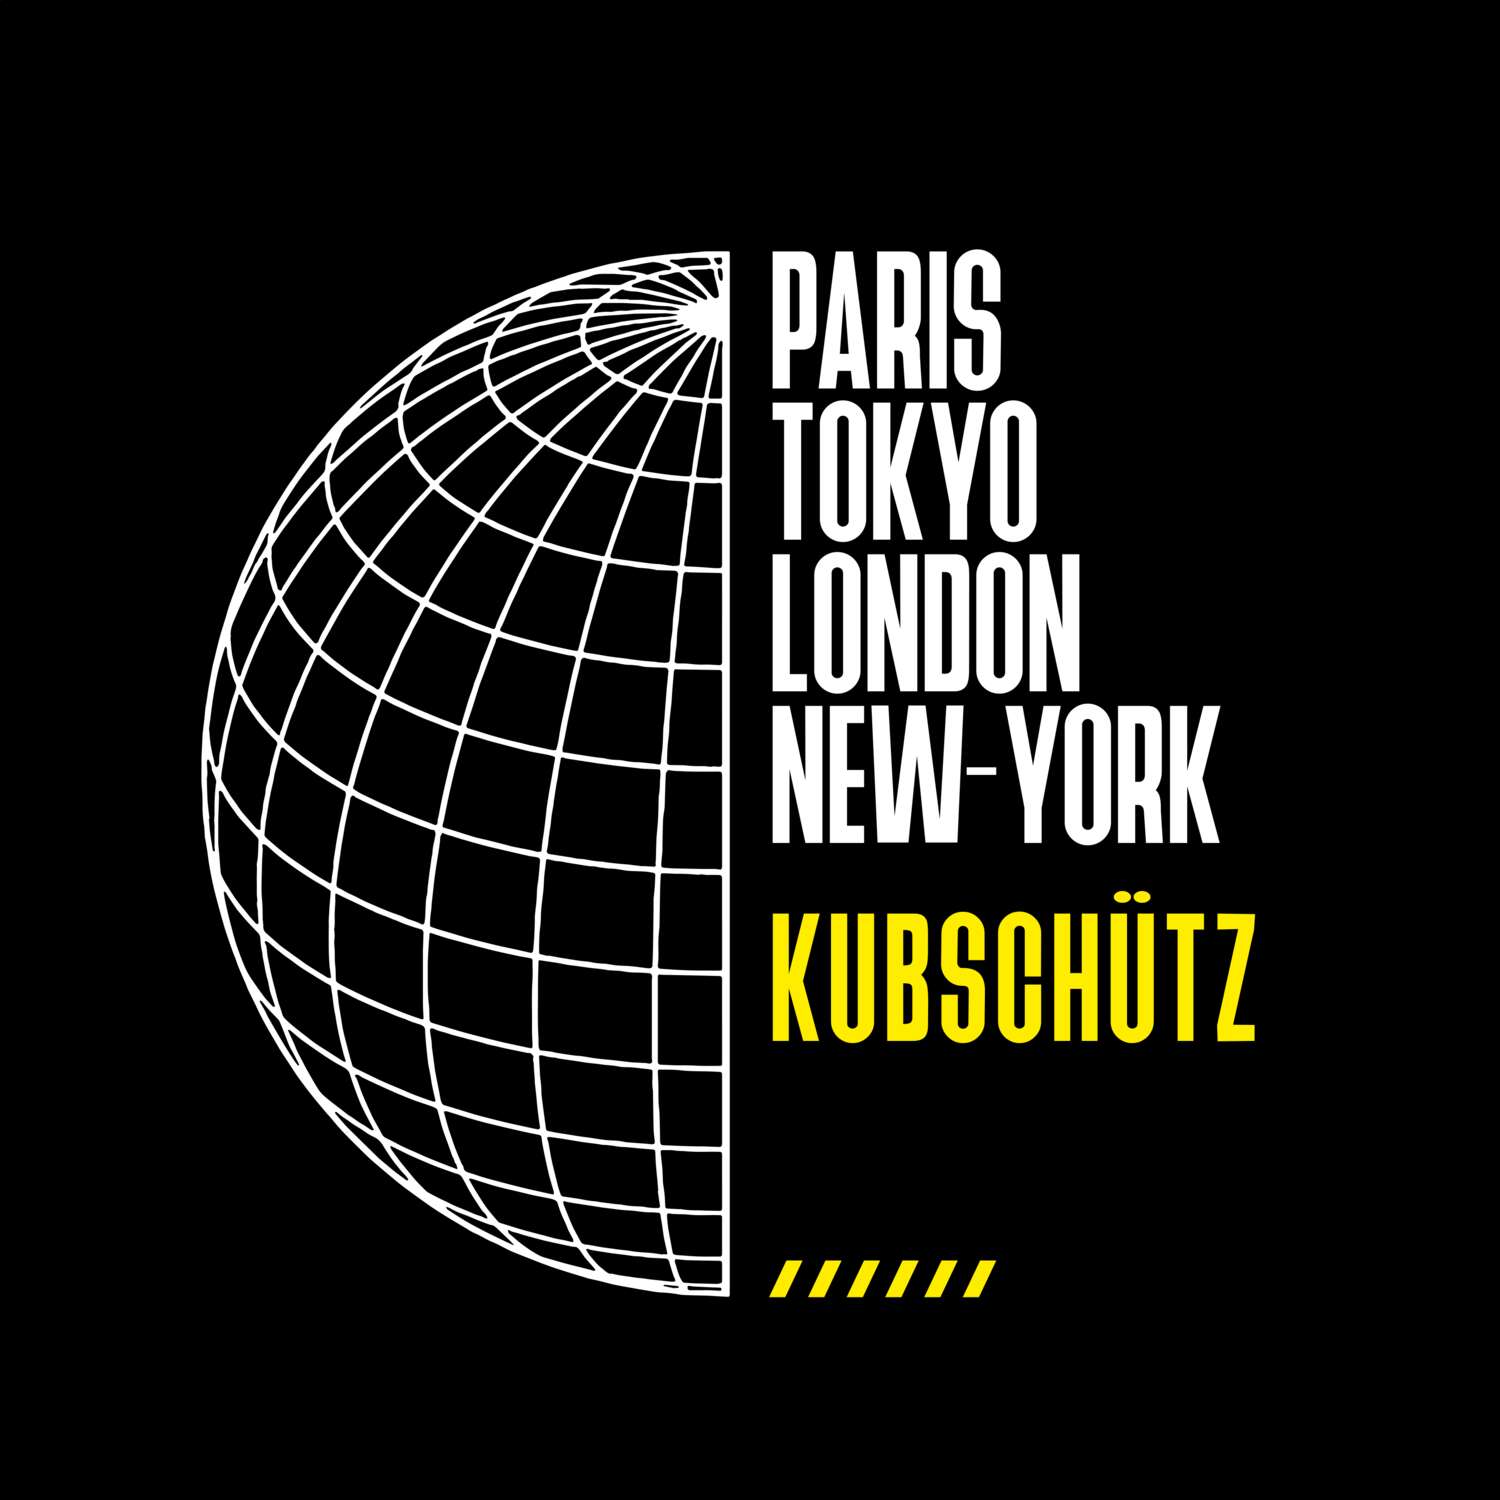 Kubschütz T-Shirt »Paris Tokyo London«